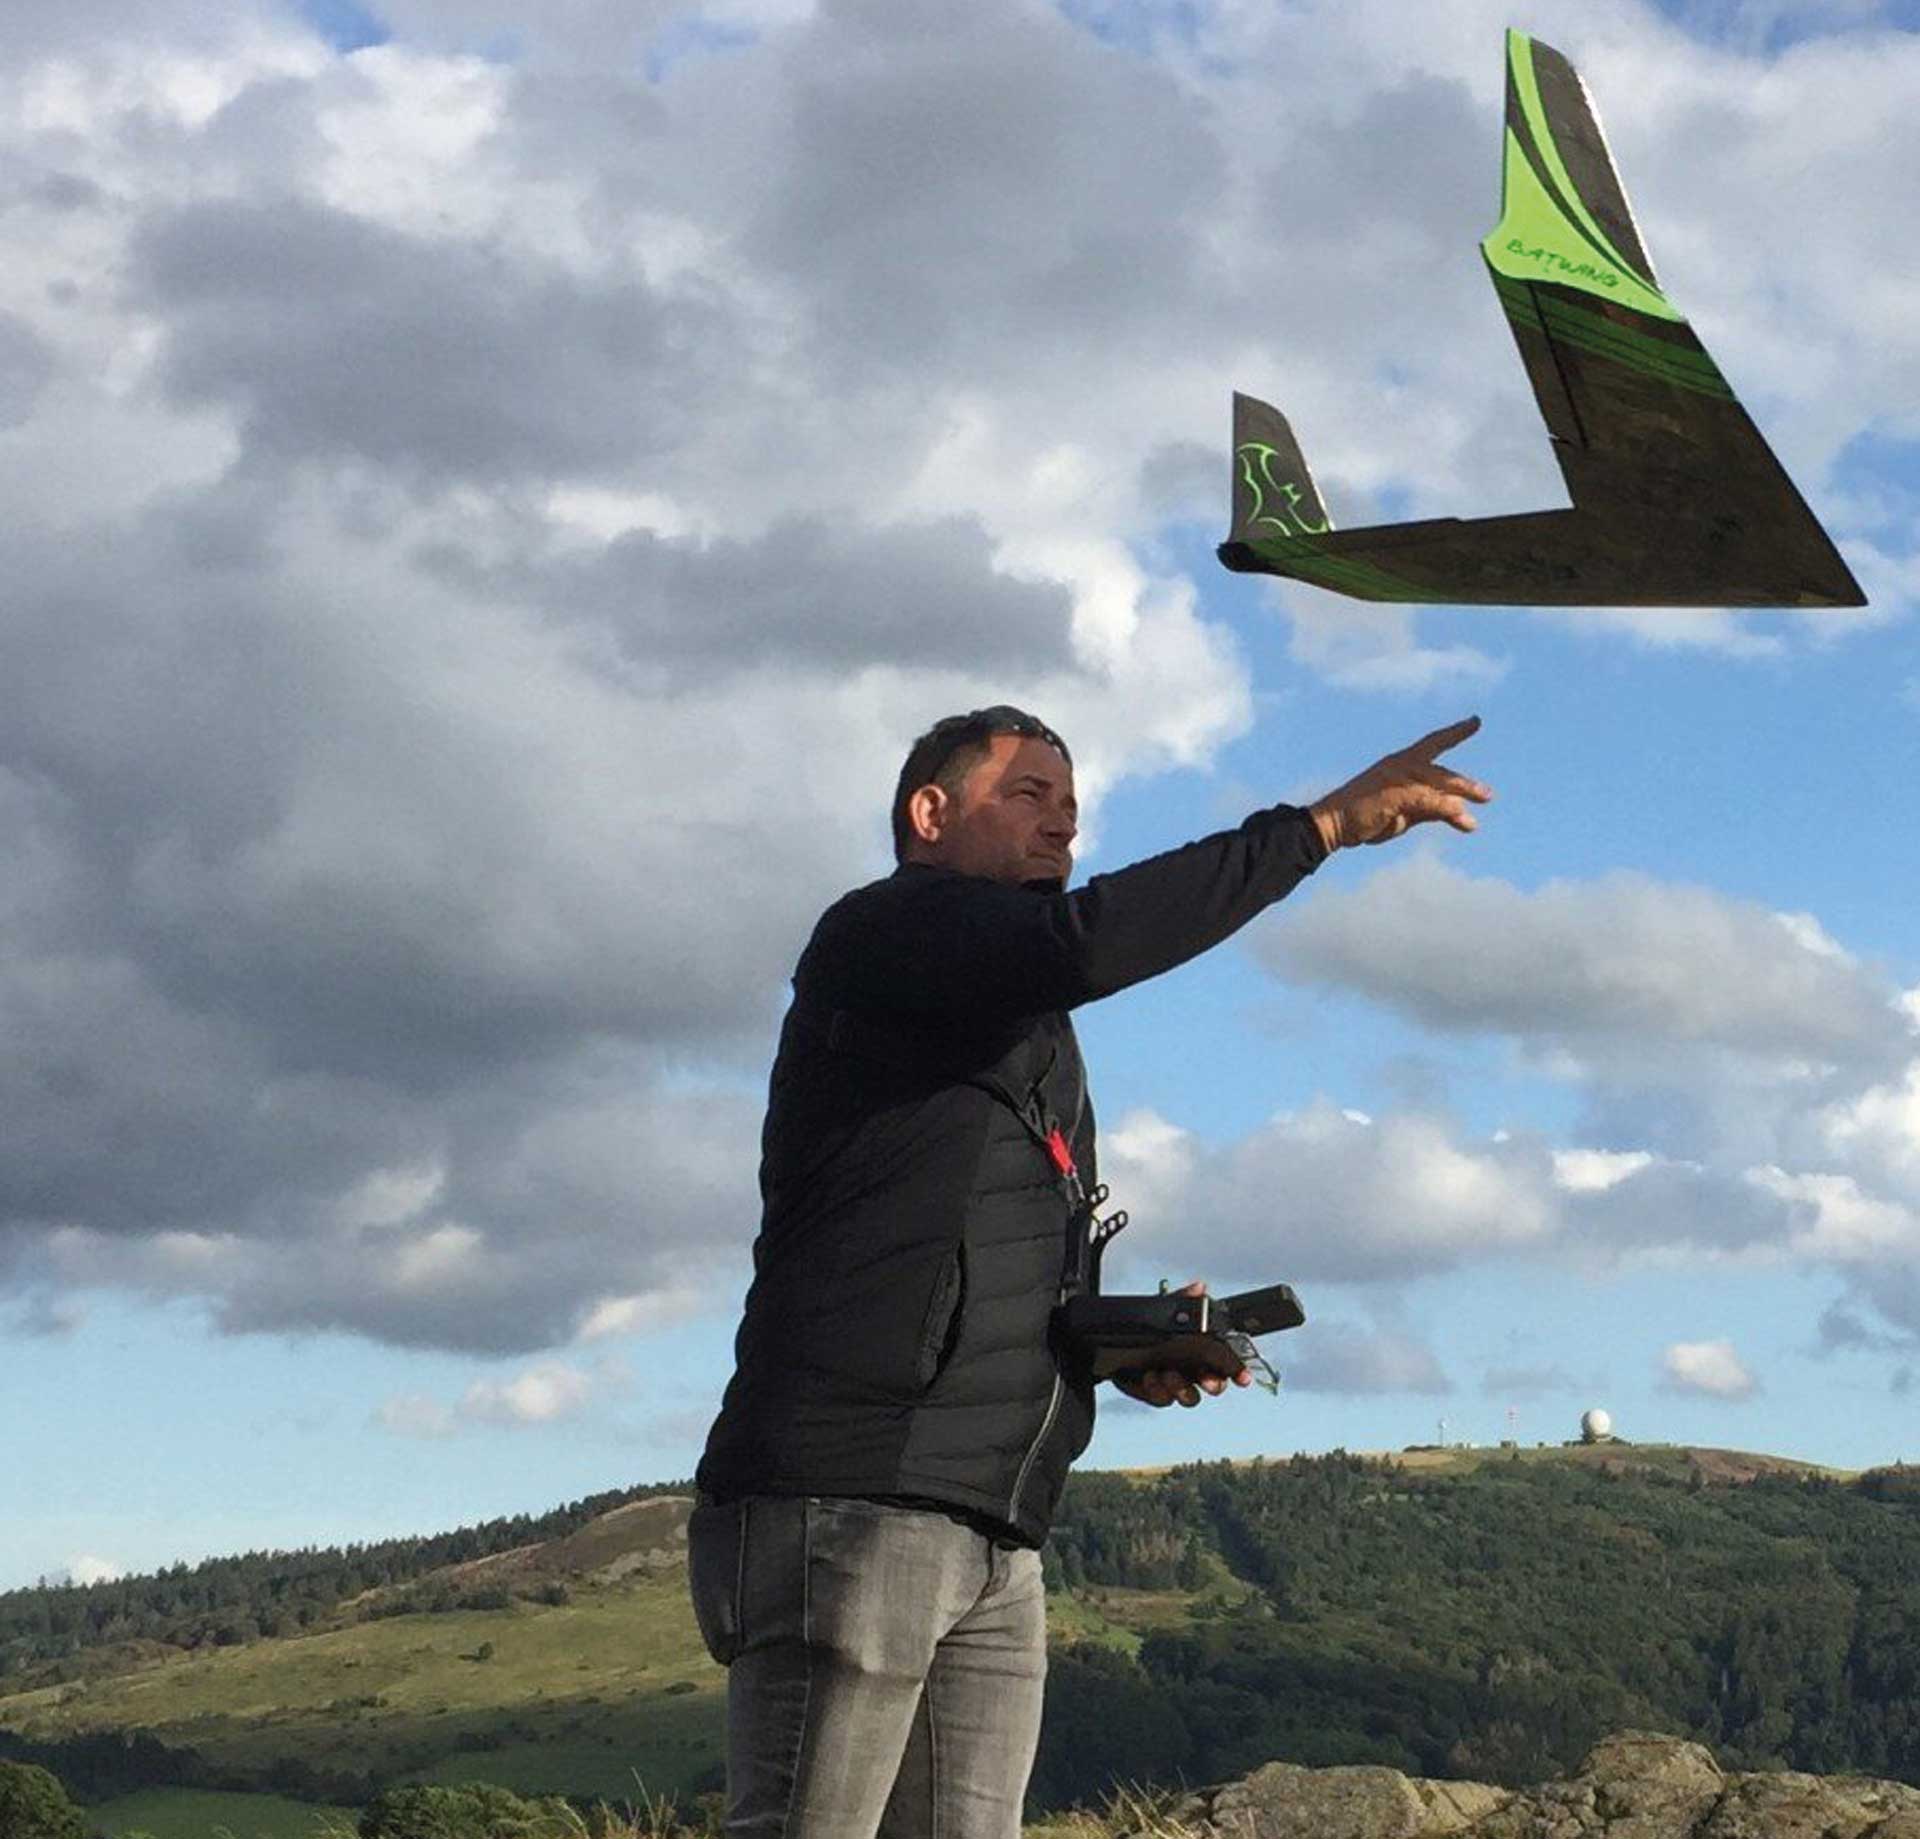 Vogel-Fly Batwing flying wing CNC laser kit glider version